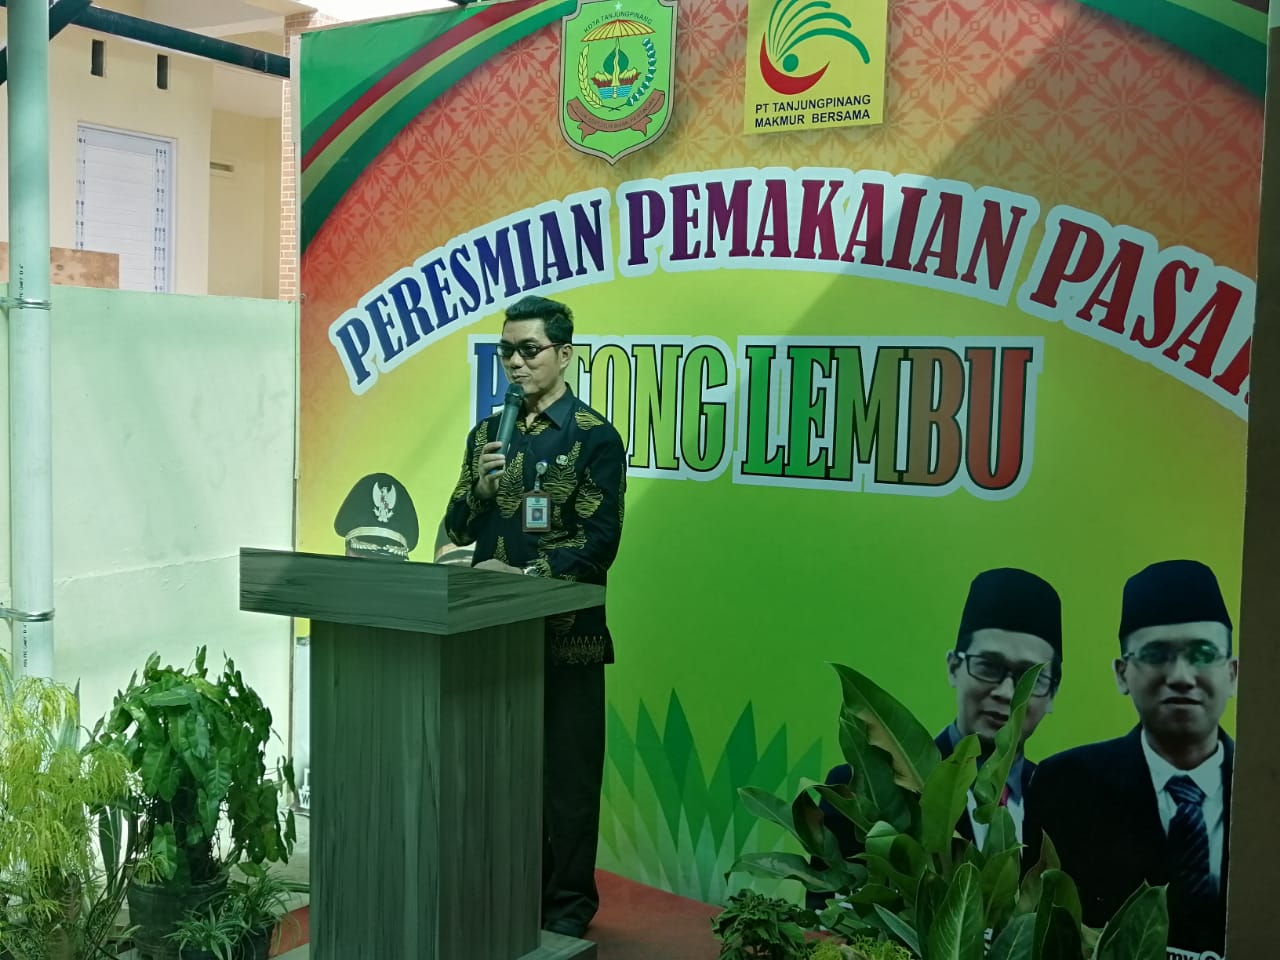 Kepala Disperdagin Kota Tanjungpinang Ahmad Yani saat menyampaikan kata sambutan di peresmian pemakaian Pasar Potong Lembu, Kamis (30/1).